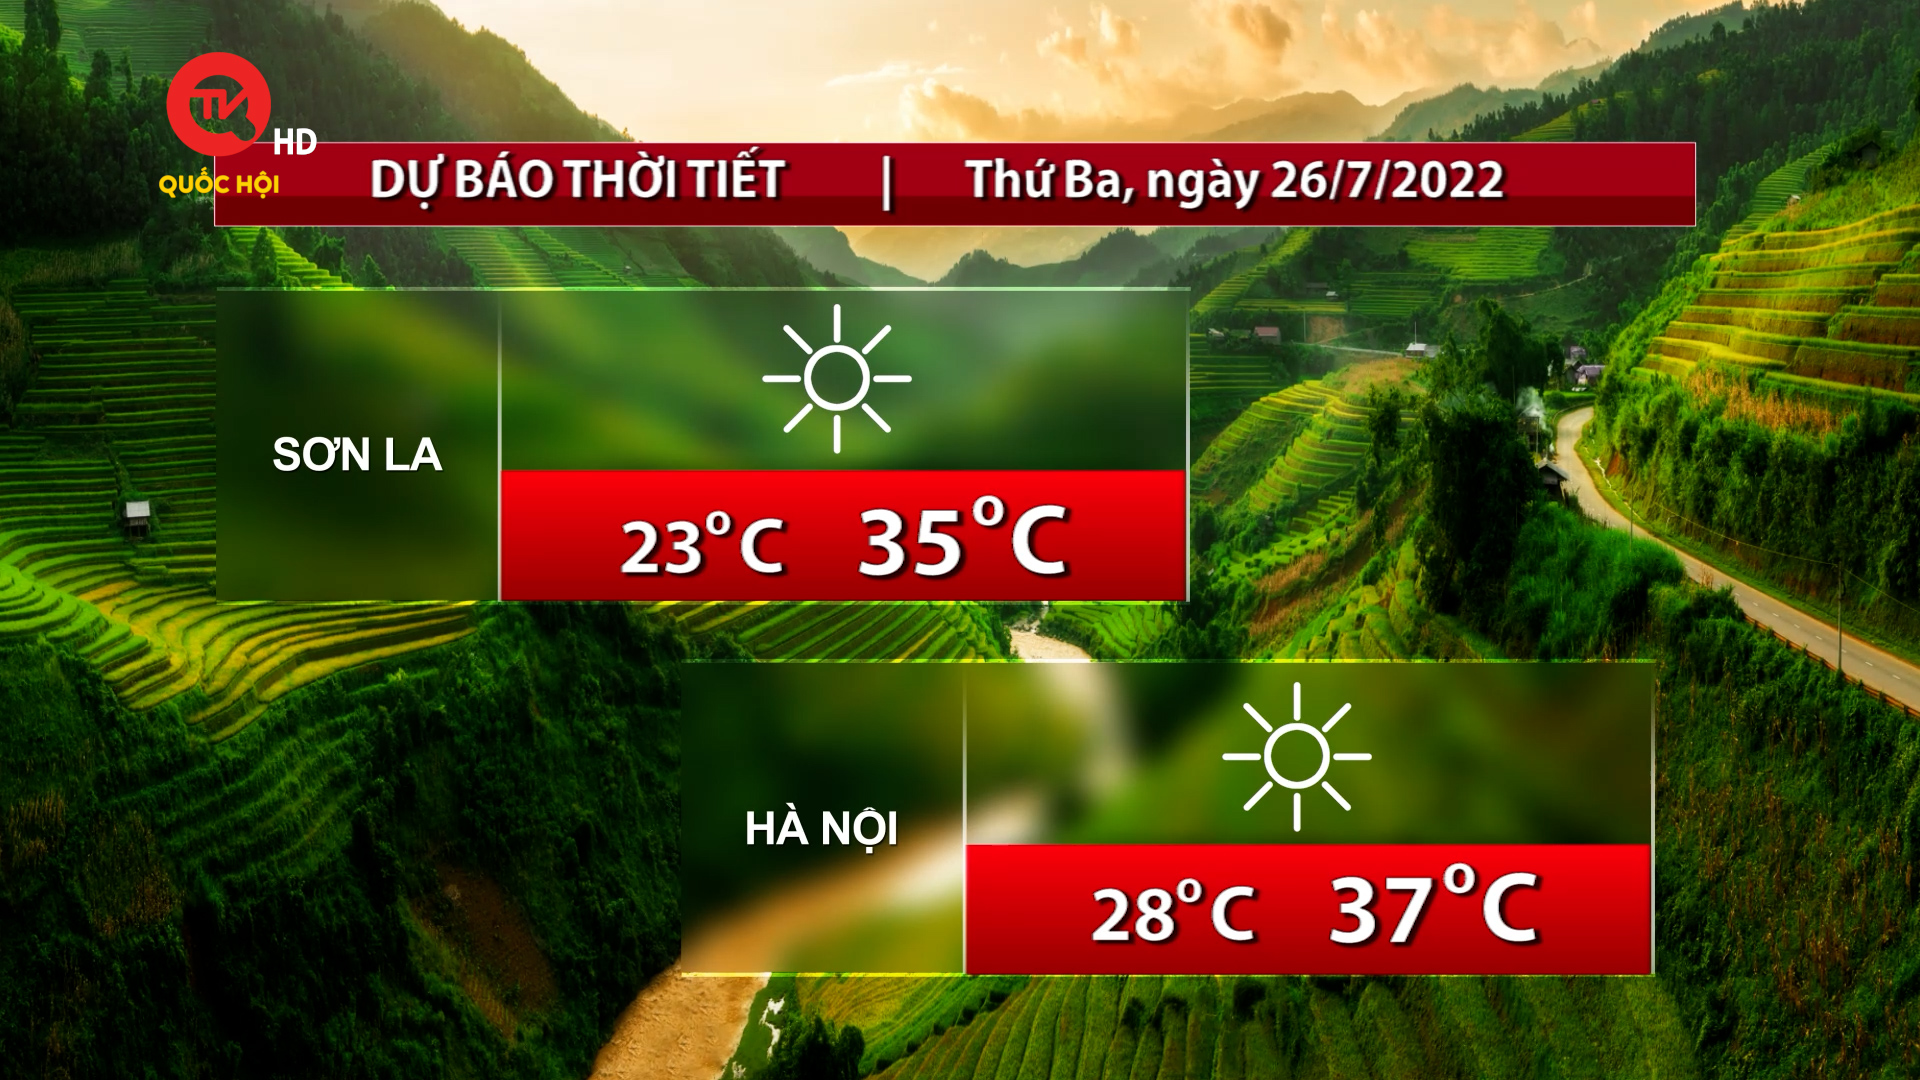 Dự báo thời tiết: Ngày 26/7 Bắc, Trung Bộ nắng nóng gia tăng, Tây Nguyên và Nam Bộ mưa giông